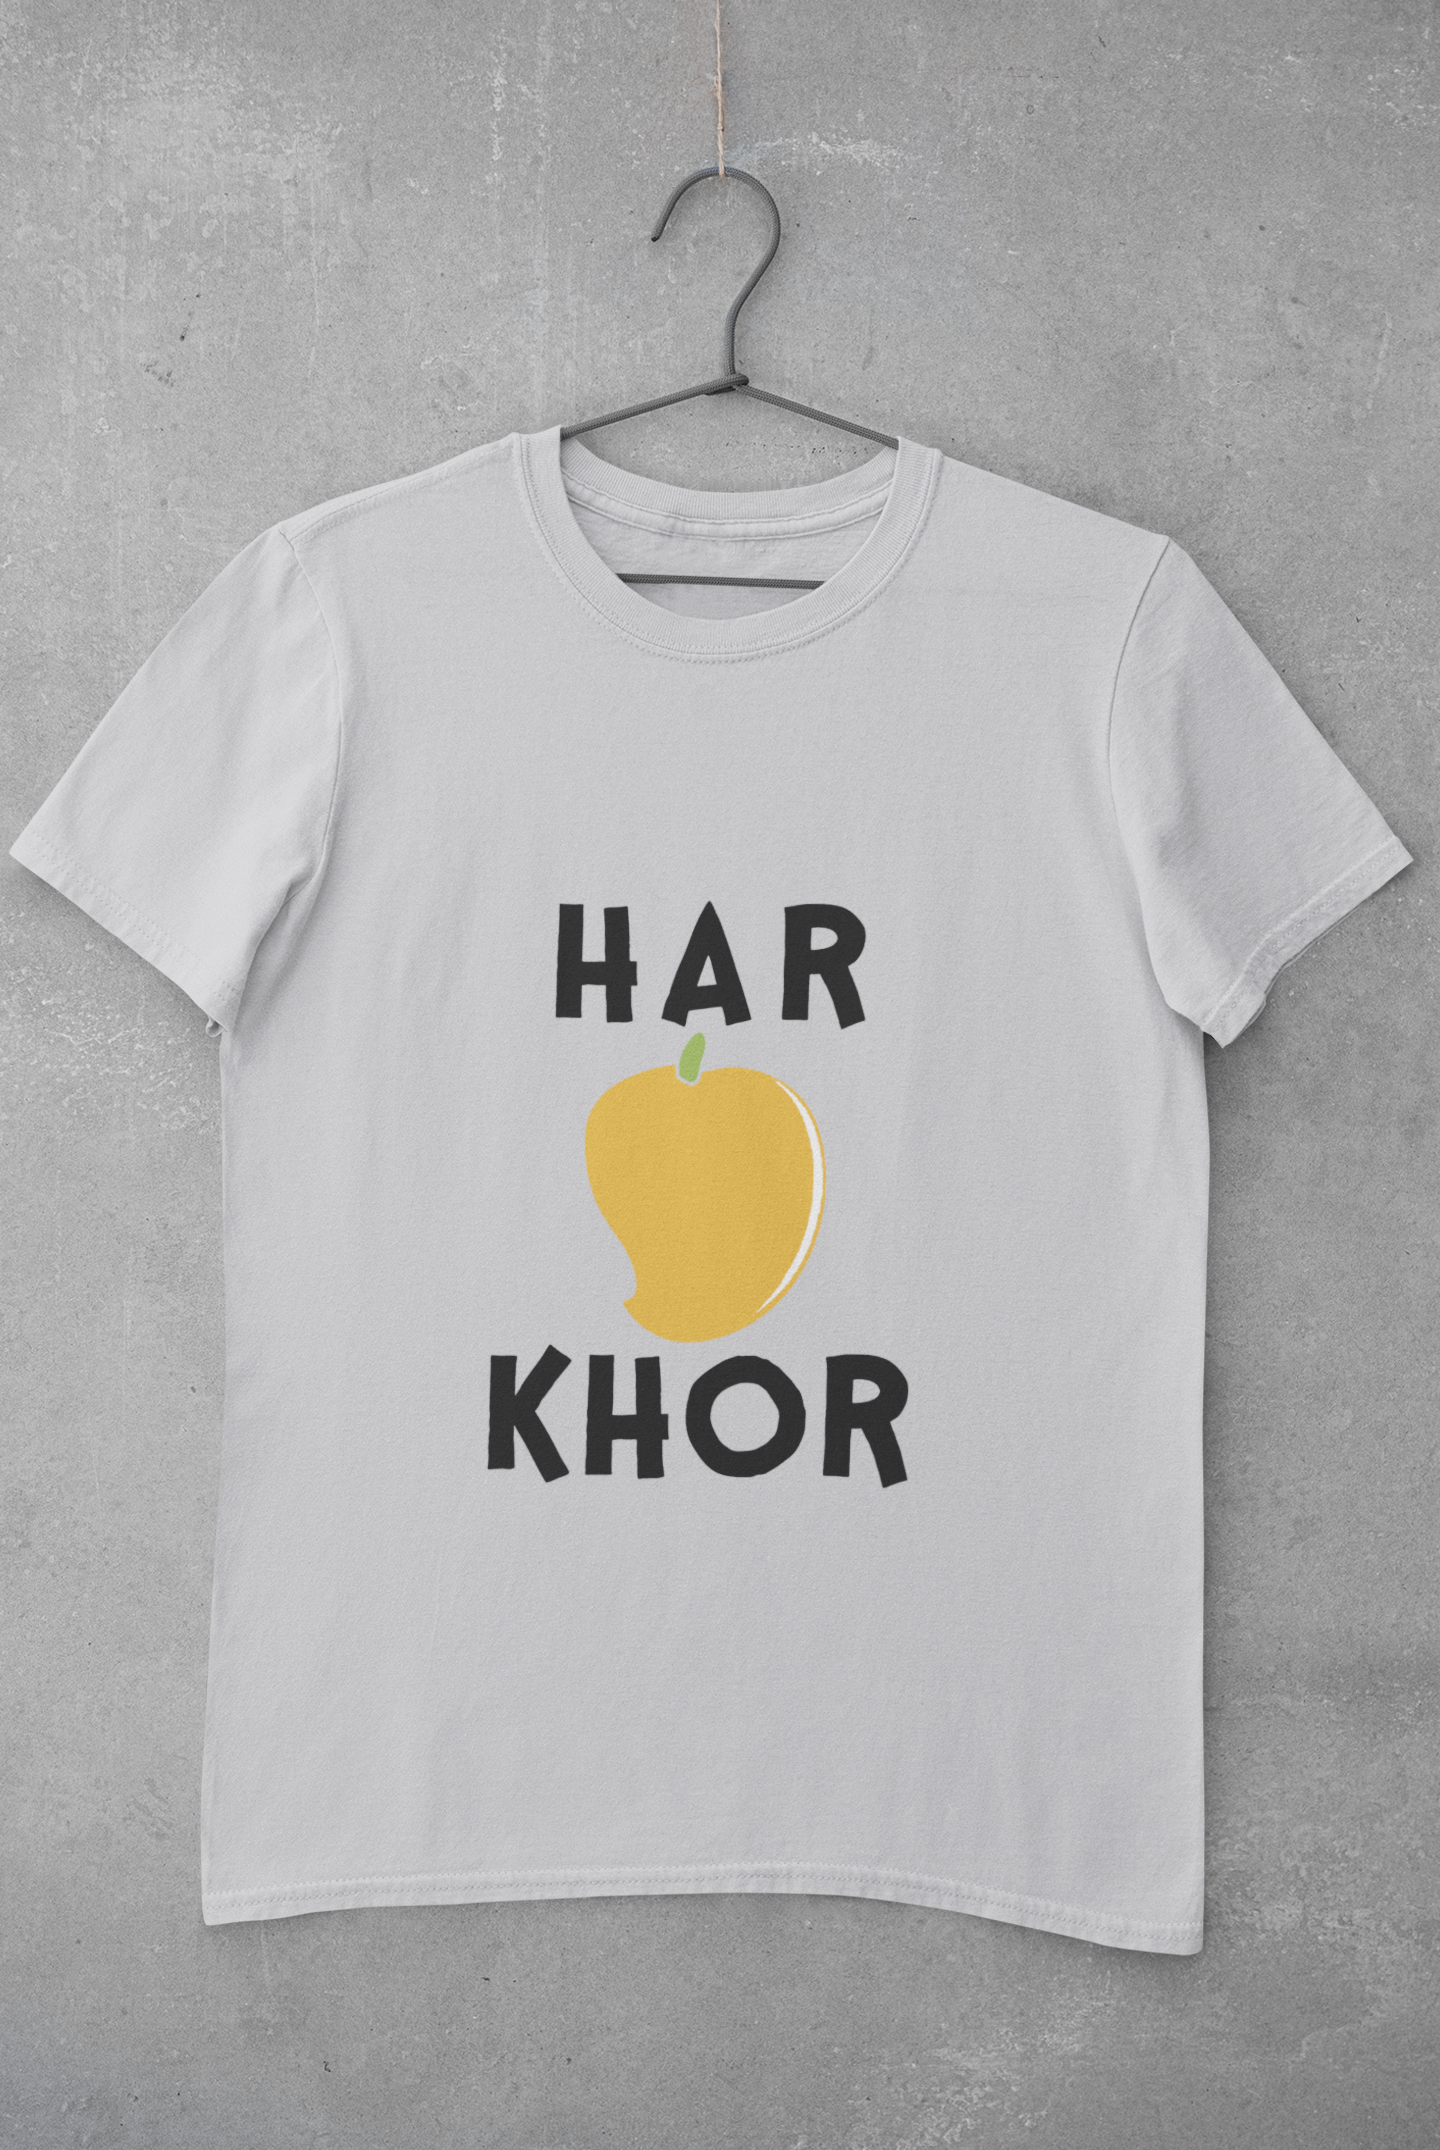 Haramkhor Women Half Sleeves T-shirt- FunkyTeesClub